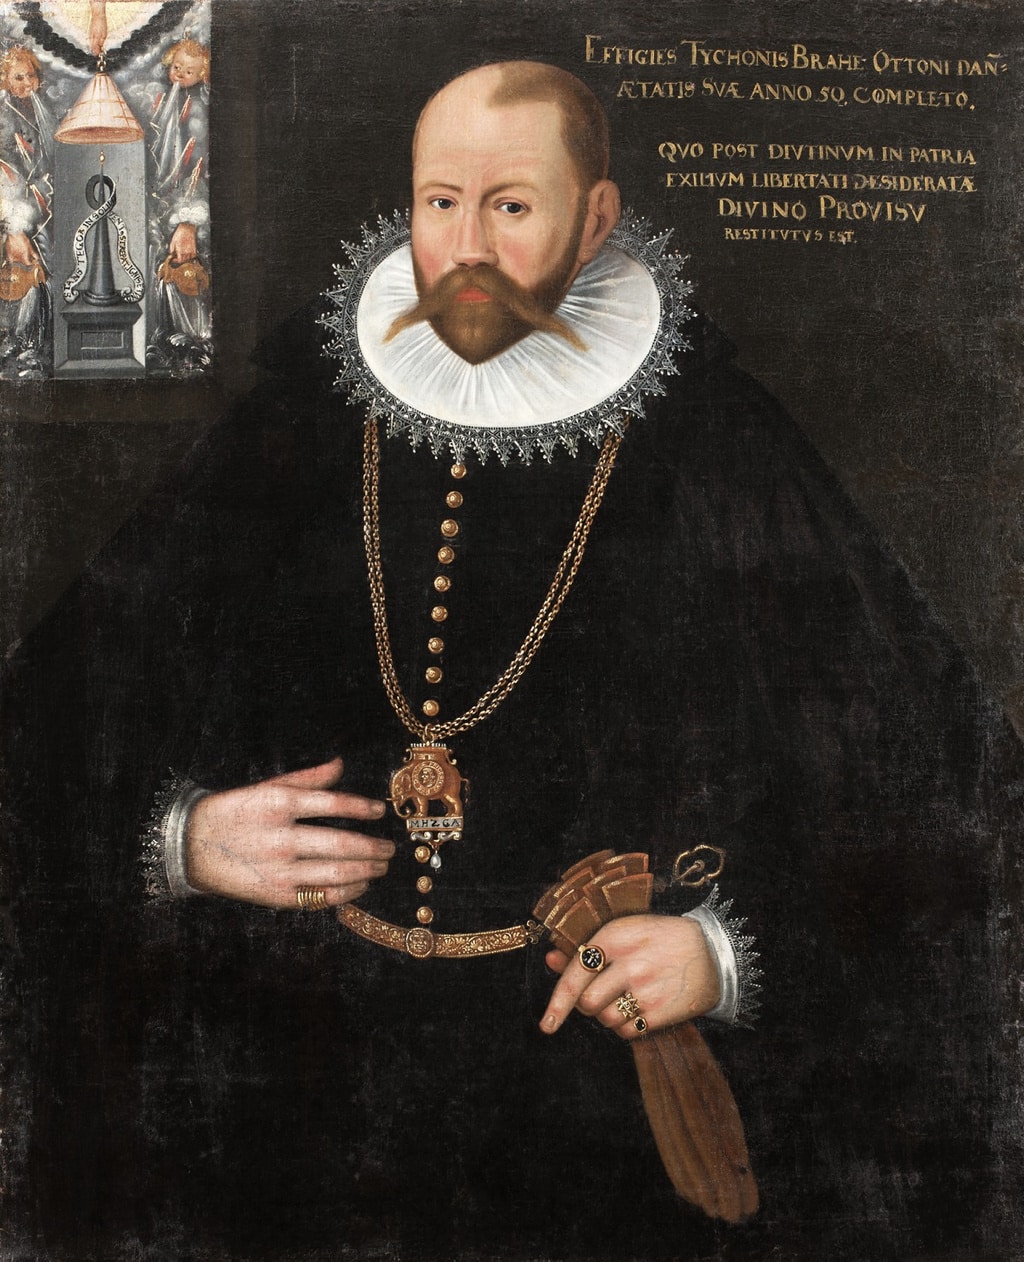 El astrónomo Tycho Brahe no fue asesinado. Descubren las auténticas causa de su muerte